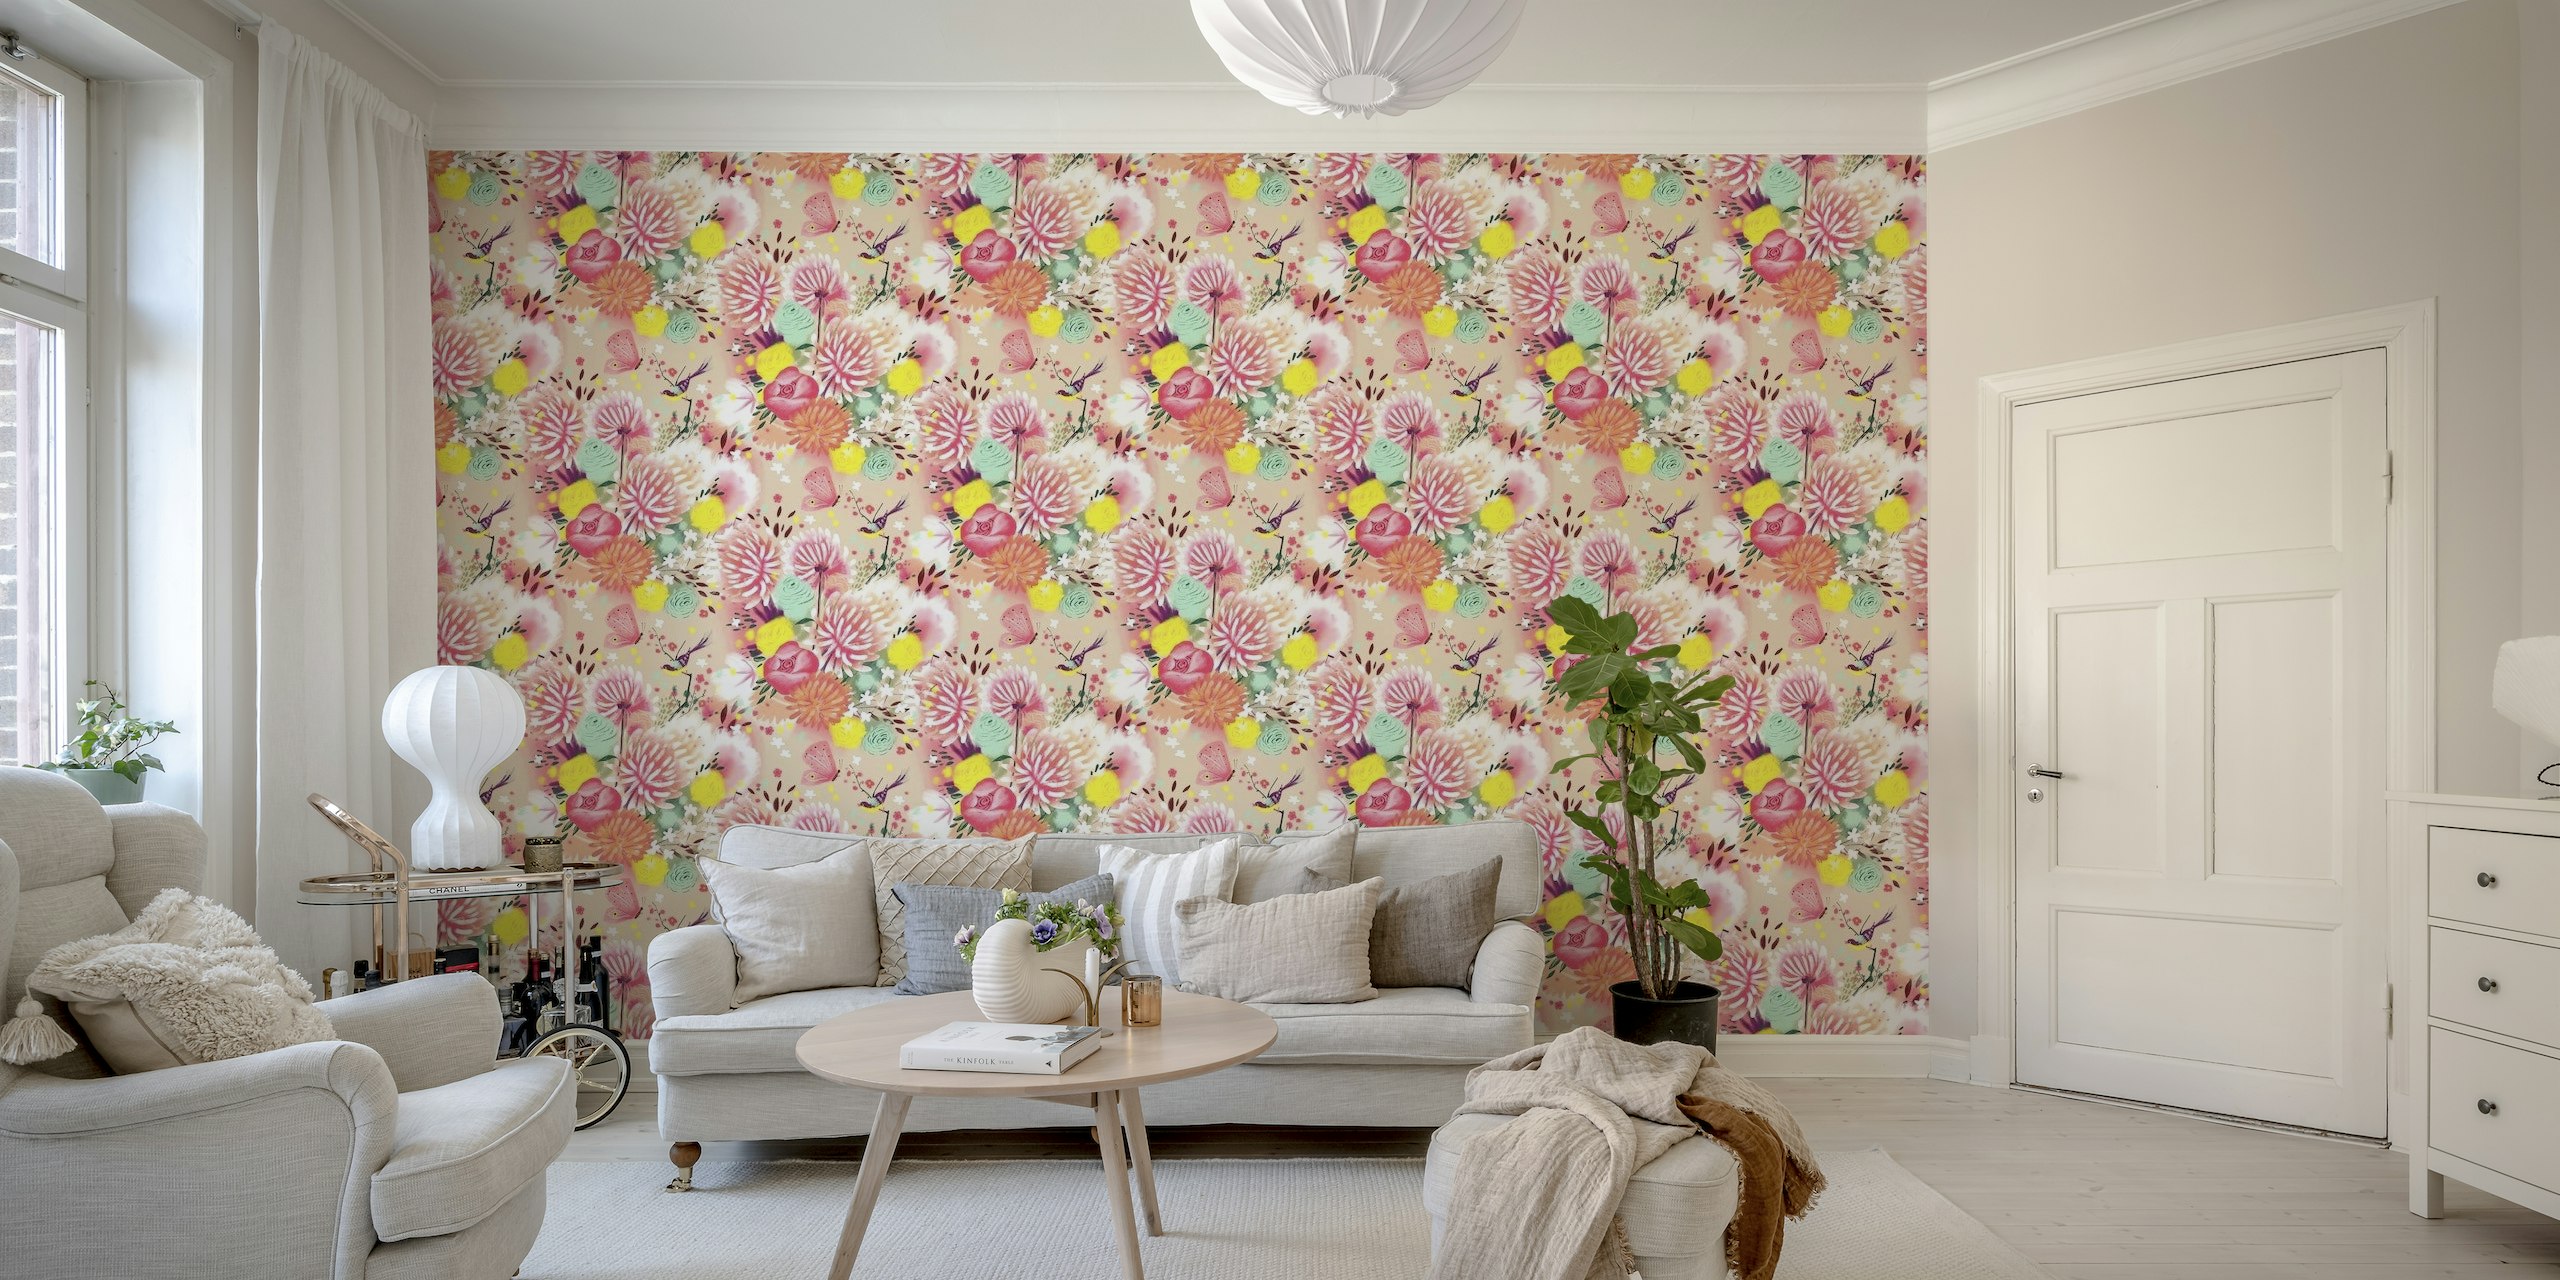 Fotomural decorativo de parede com suaves flores primaveris em tons pastel e uma delicada borboleta.